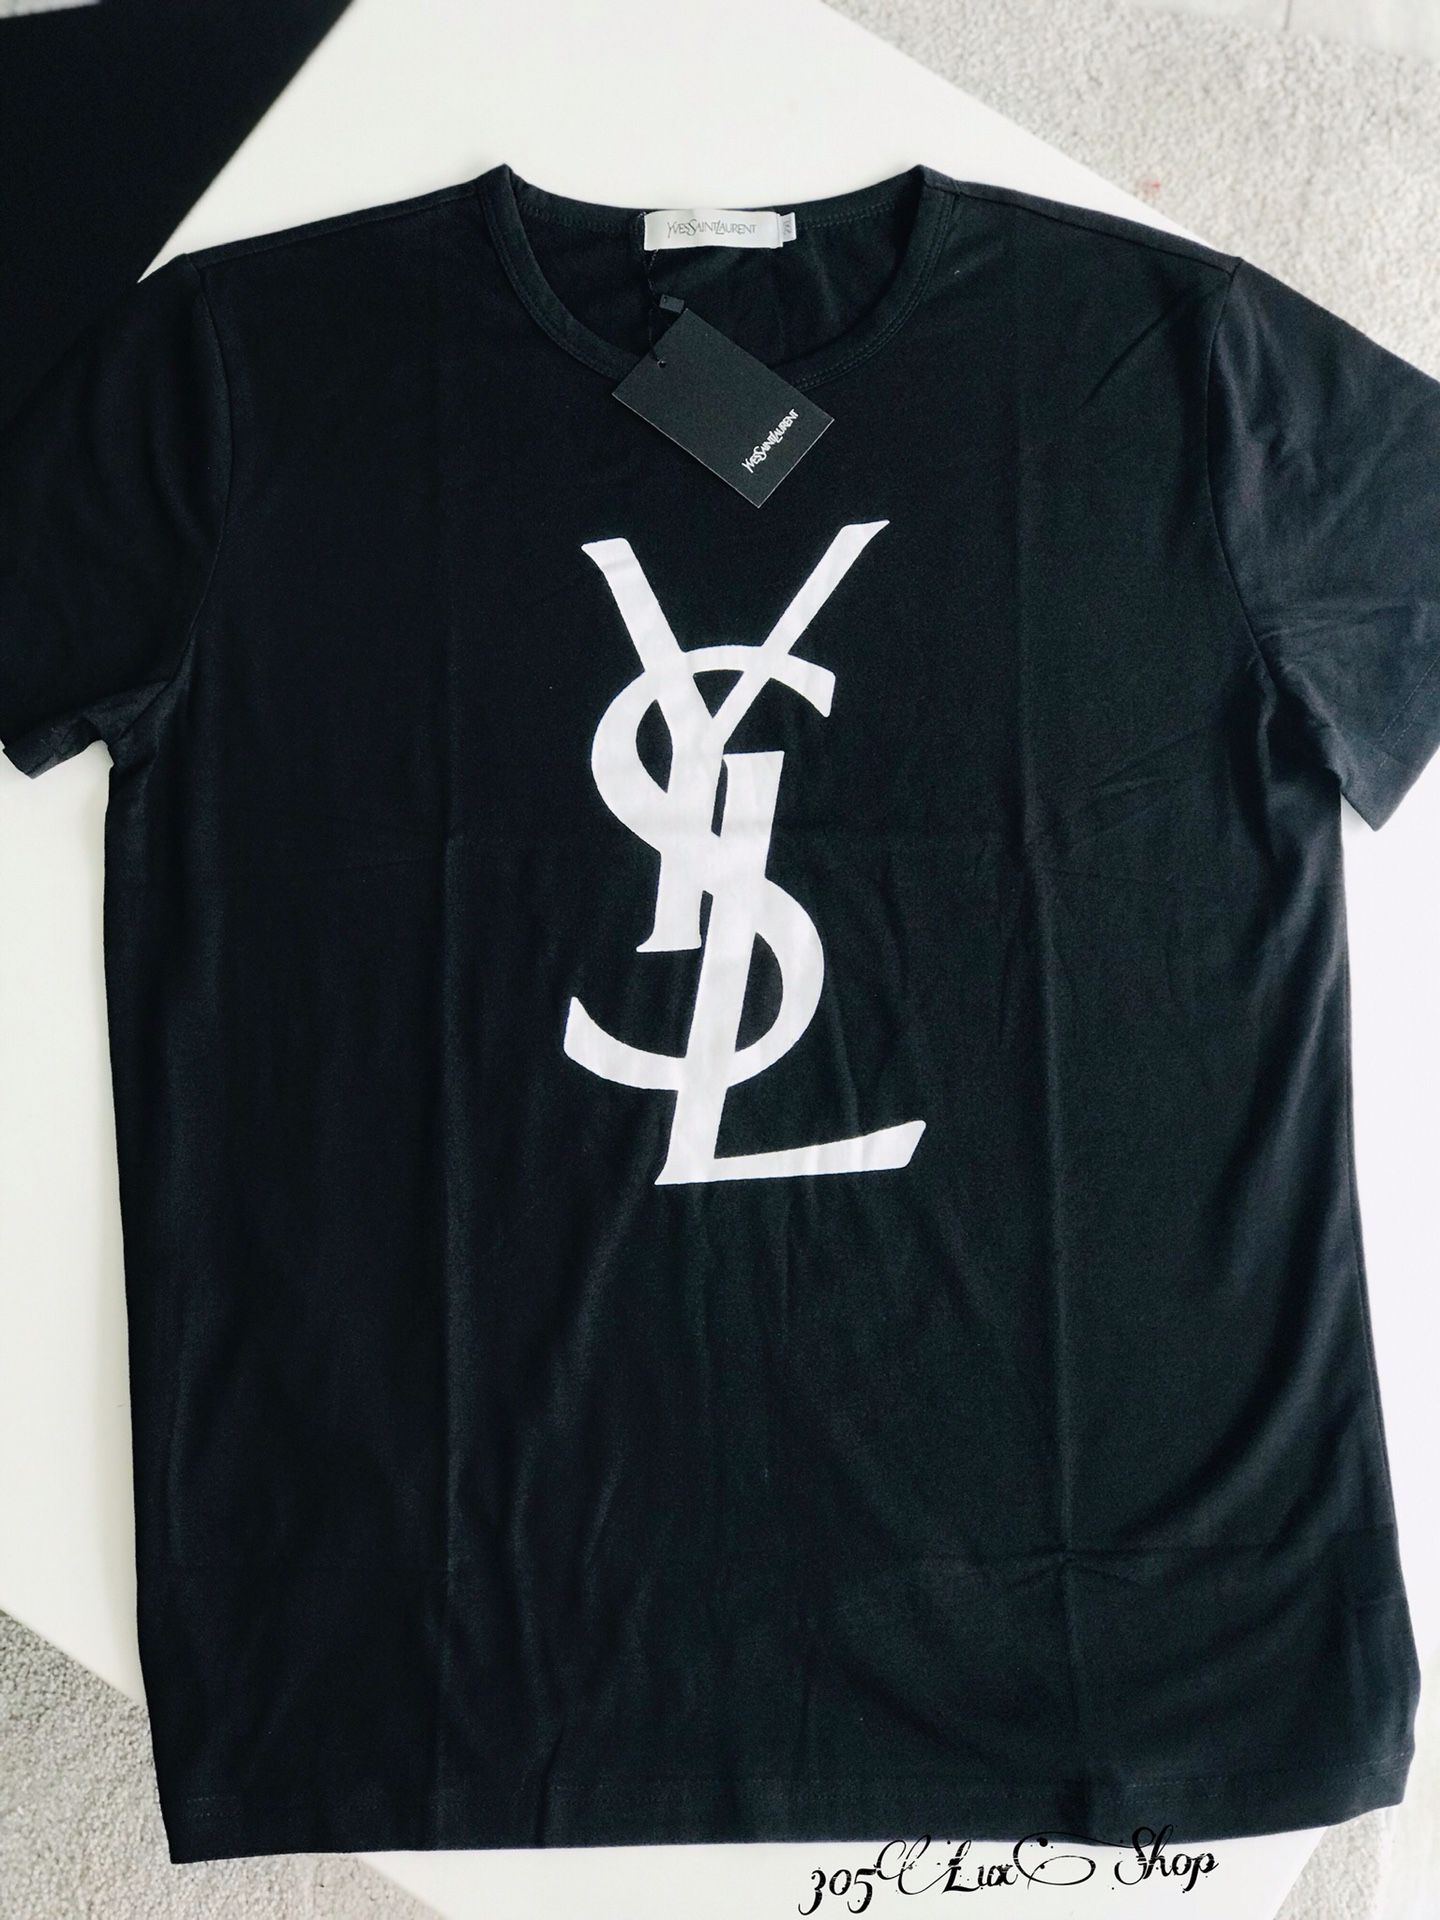 Yves Saint Laurent T shirt / Franela Yves Saint Laurent